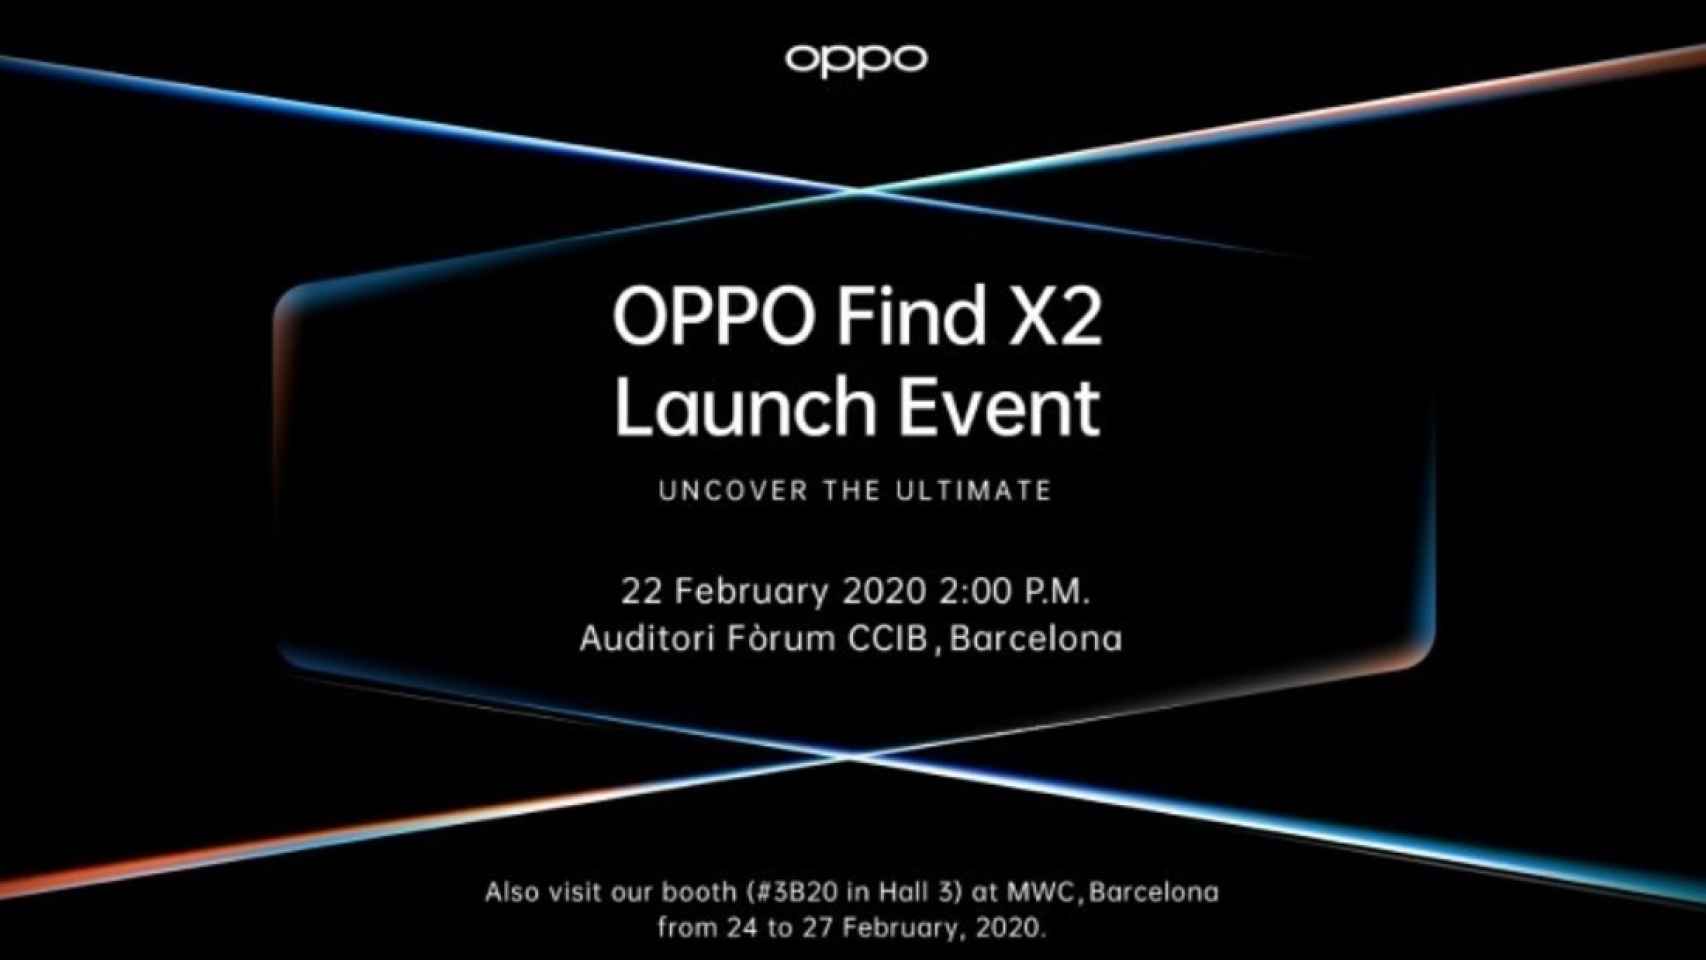 El OPPO Find X2 se presenta el 22 de febrero en Barcelona